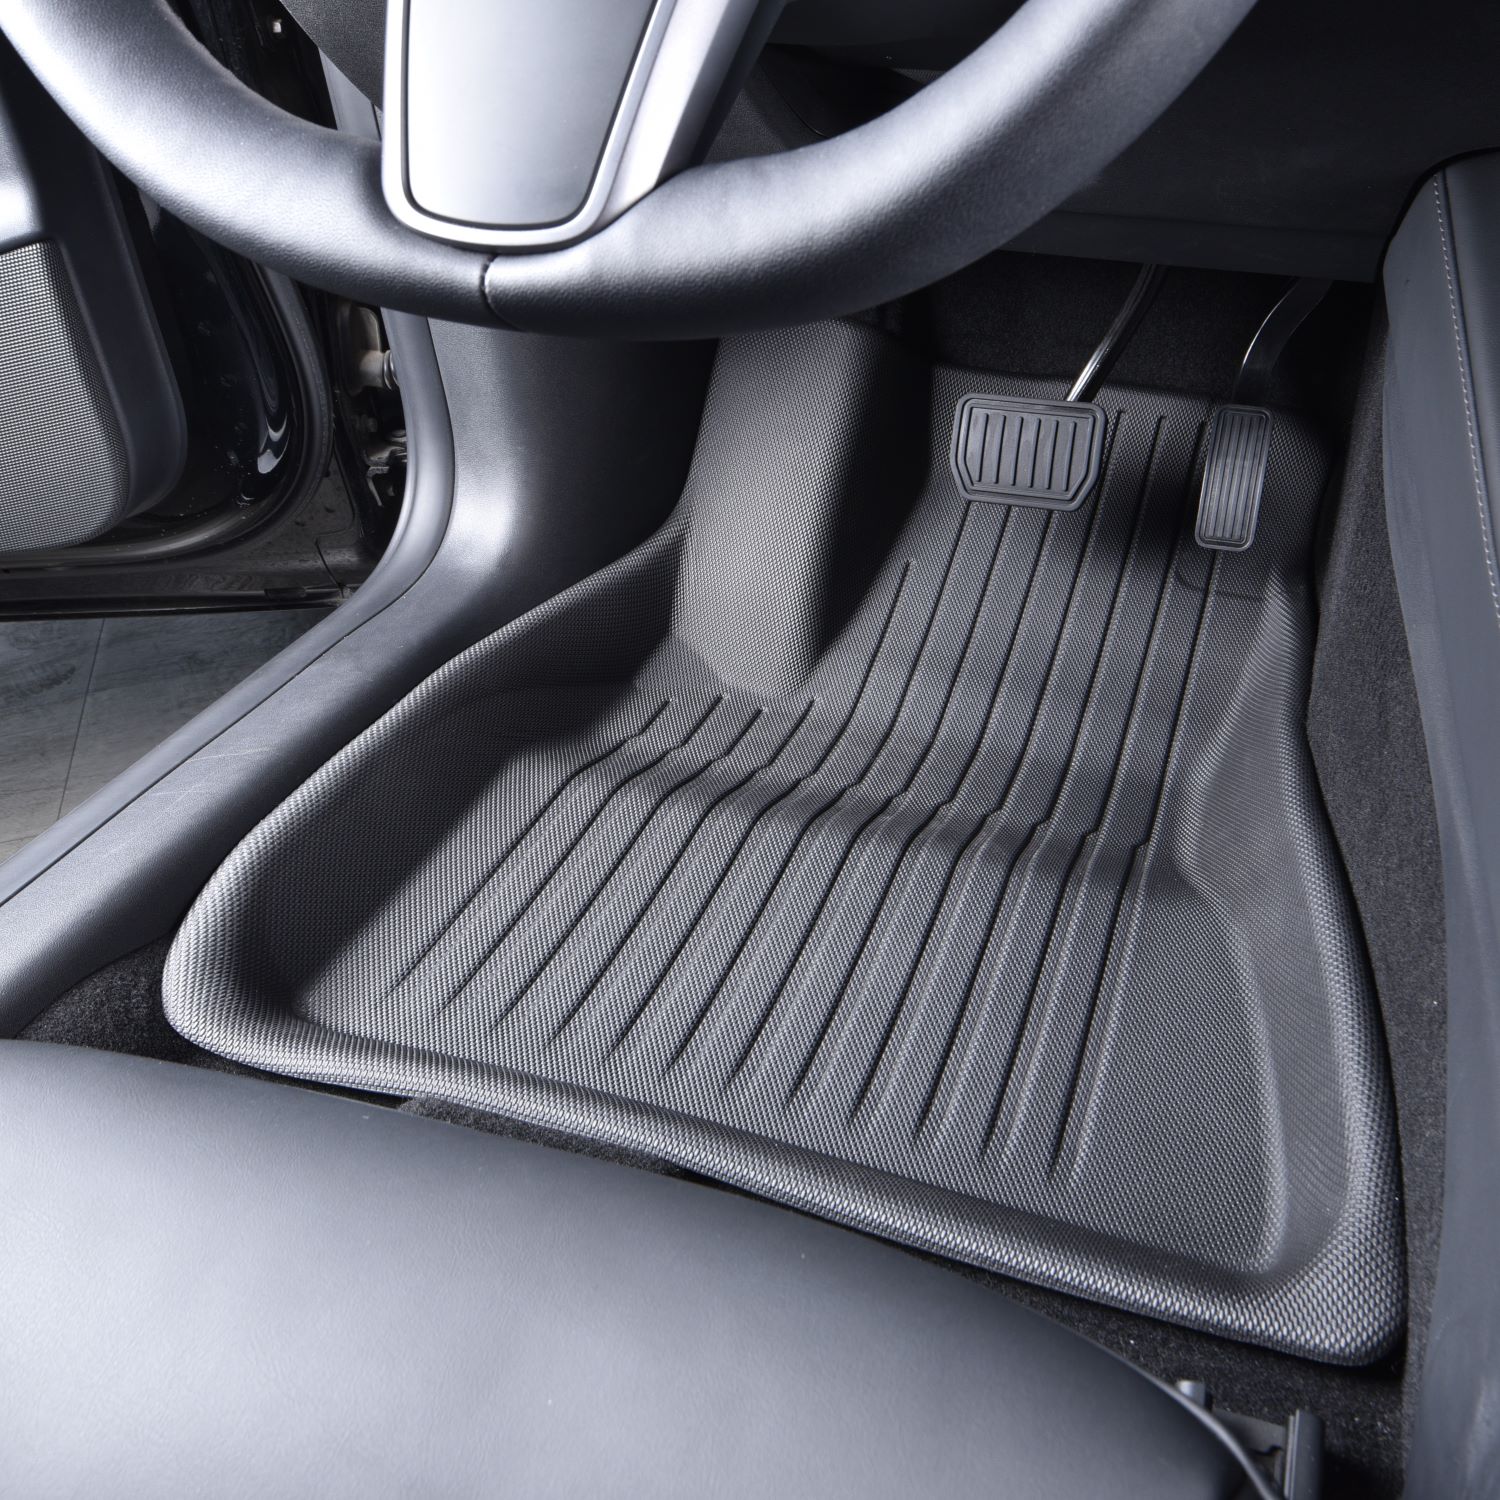 Tesla Model 3 Floor Mats Interior Liners